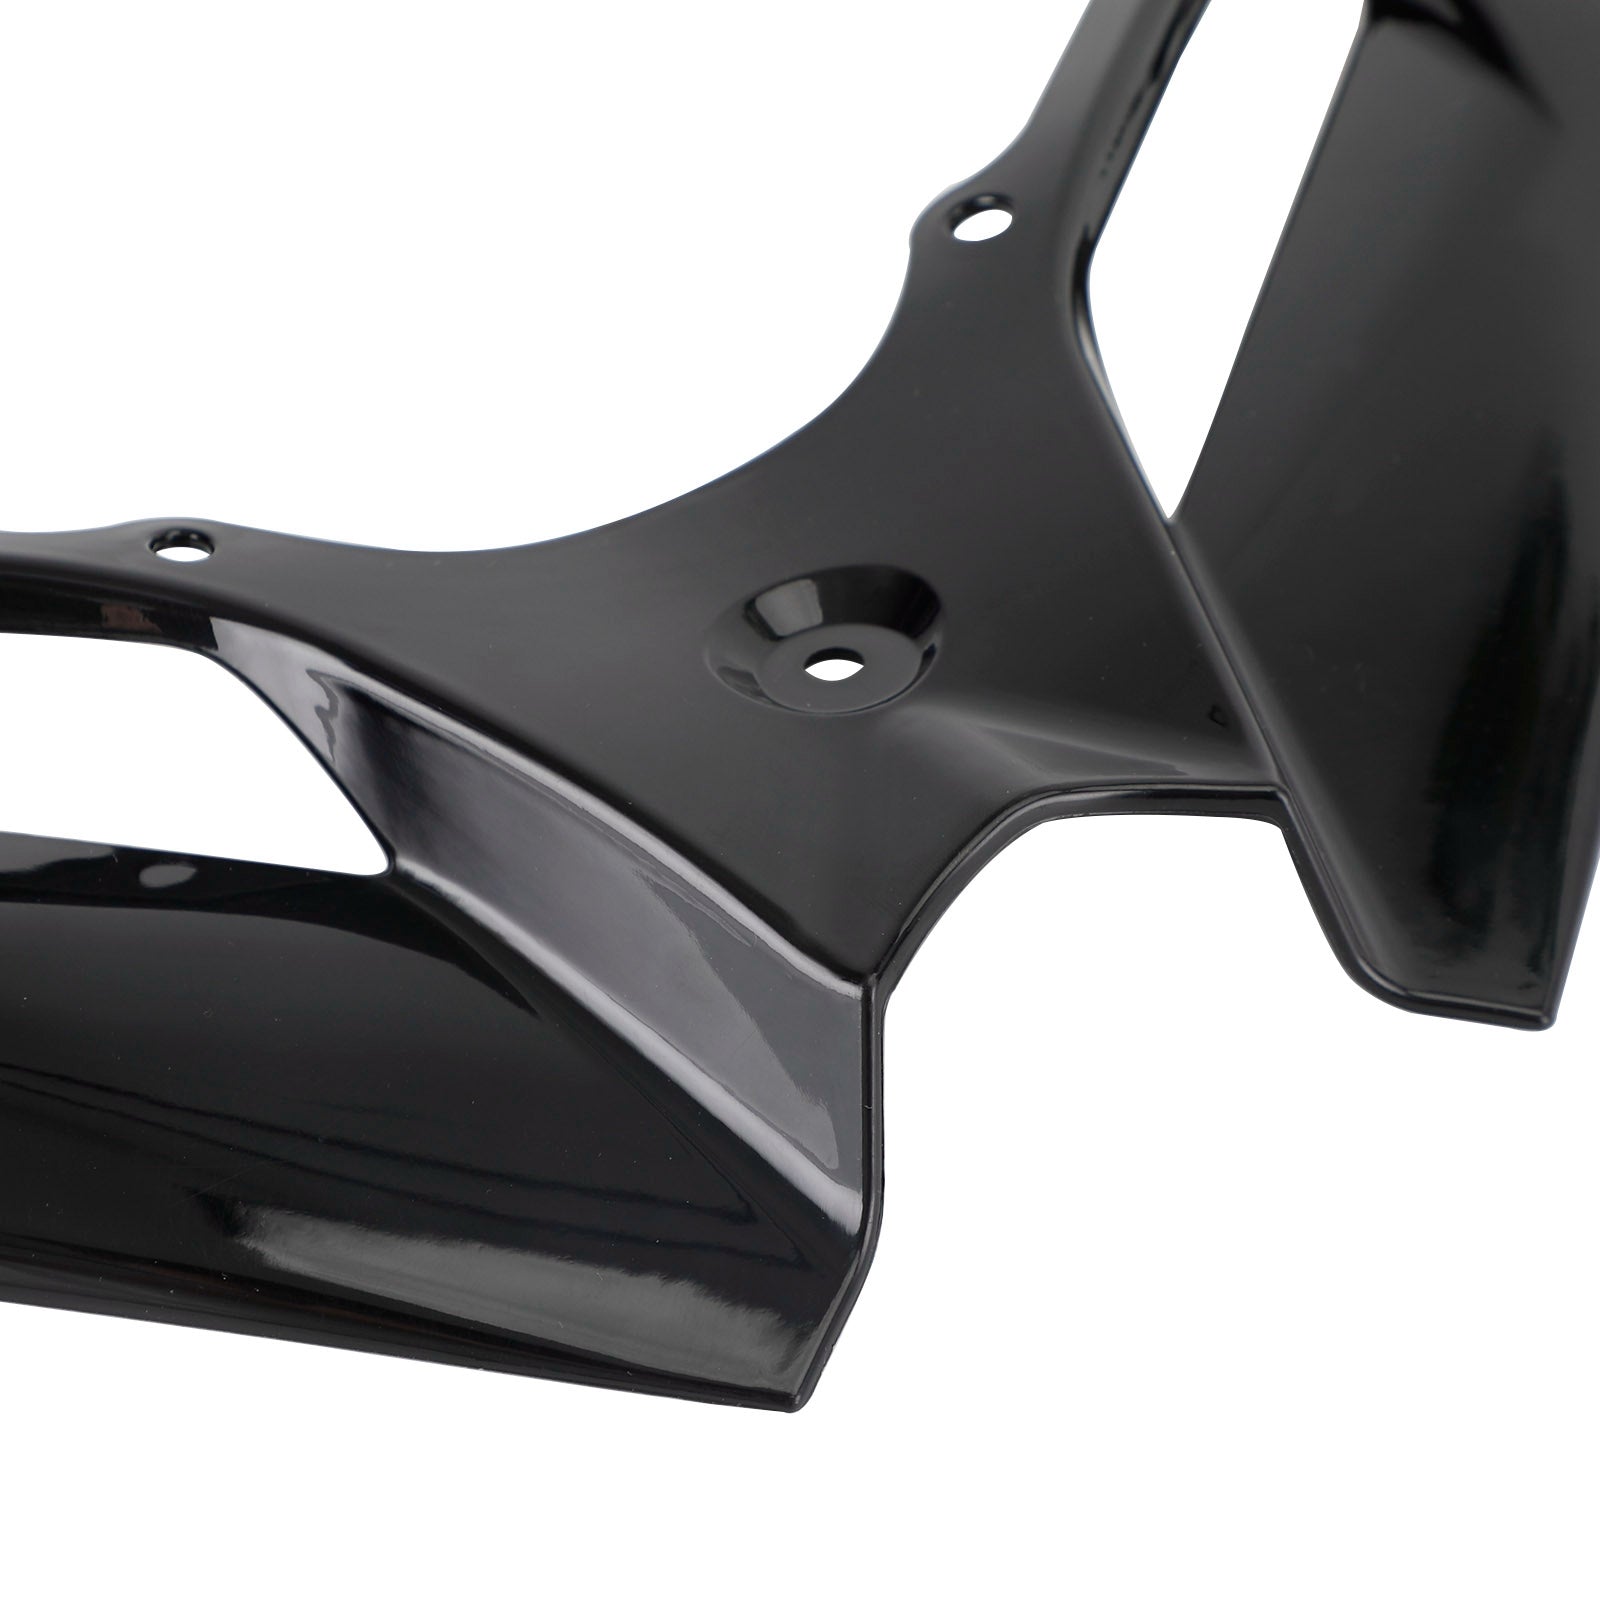 Vordere Kotflügelschnabel-Nasenkegelverlängerung für Yamaha N-MAX NMAX 2020–2023